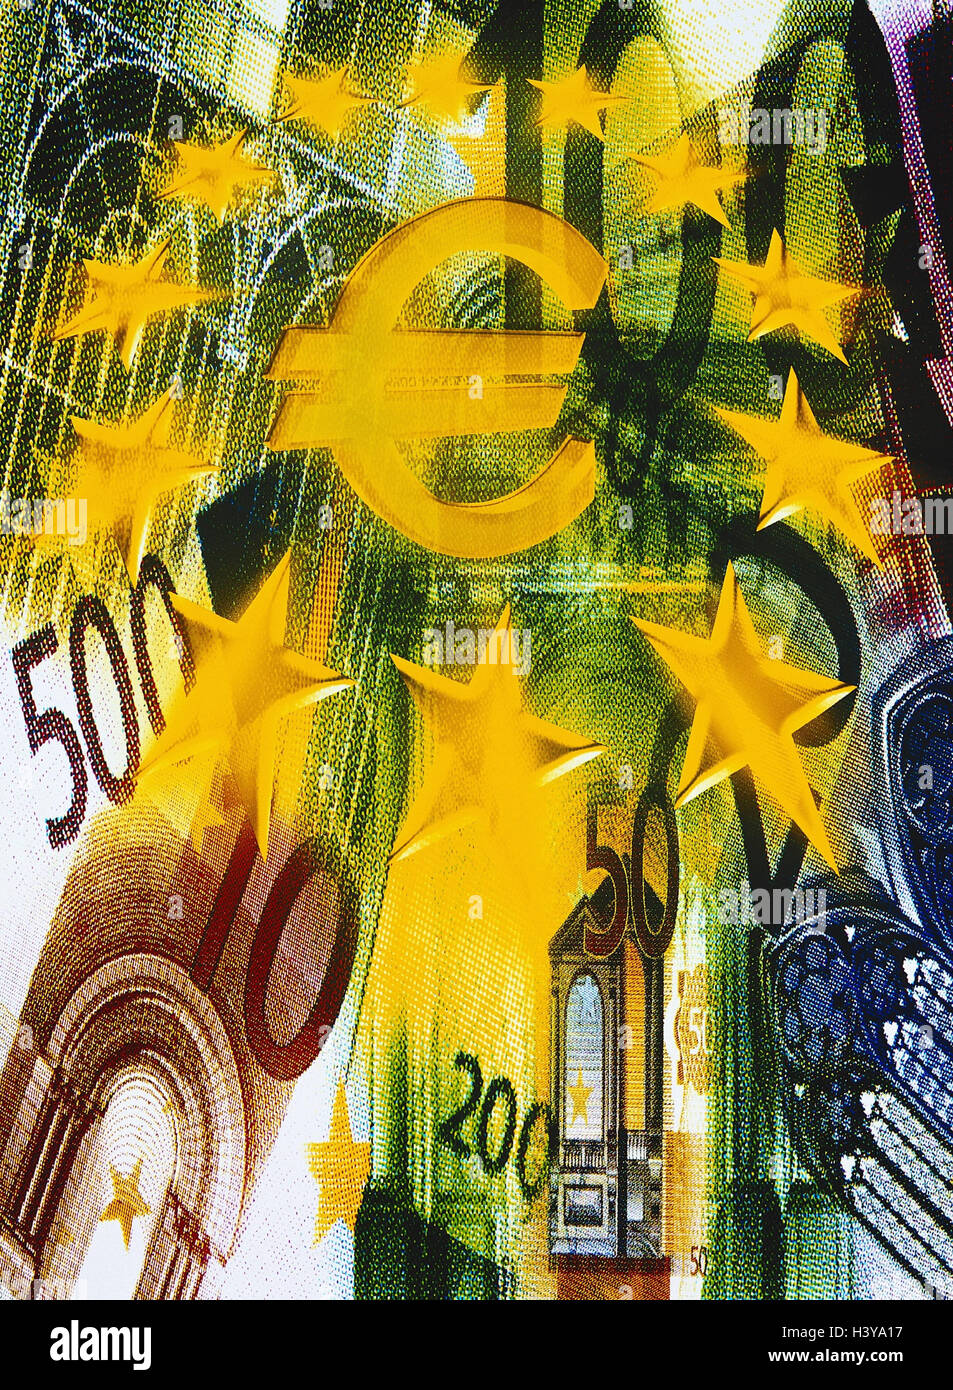 Icon, Europäische Währungsunion, Banknoten, Euro, Währung Figur, EU-Sternen, komponieren, EWWU, WWU, EU, Europäische Union, Währung, Einheitswährung, Währungssystem, Einheit Stockfoto